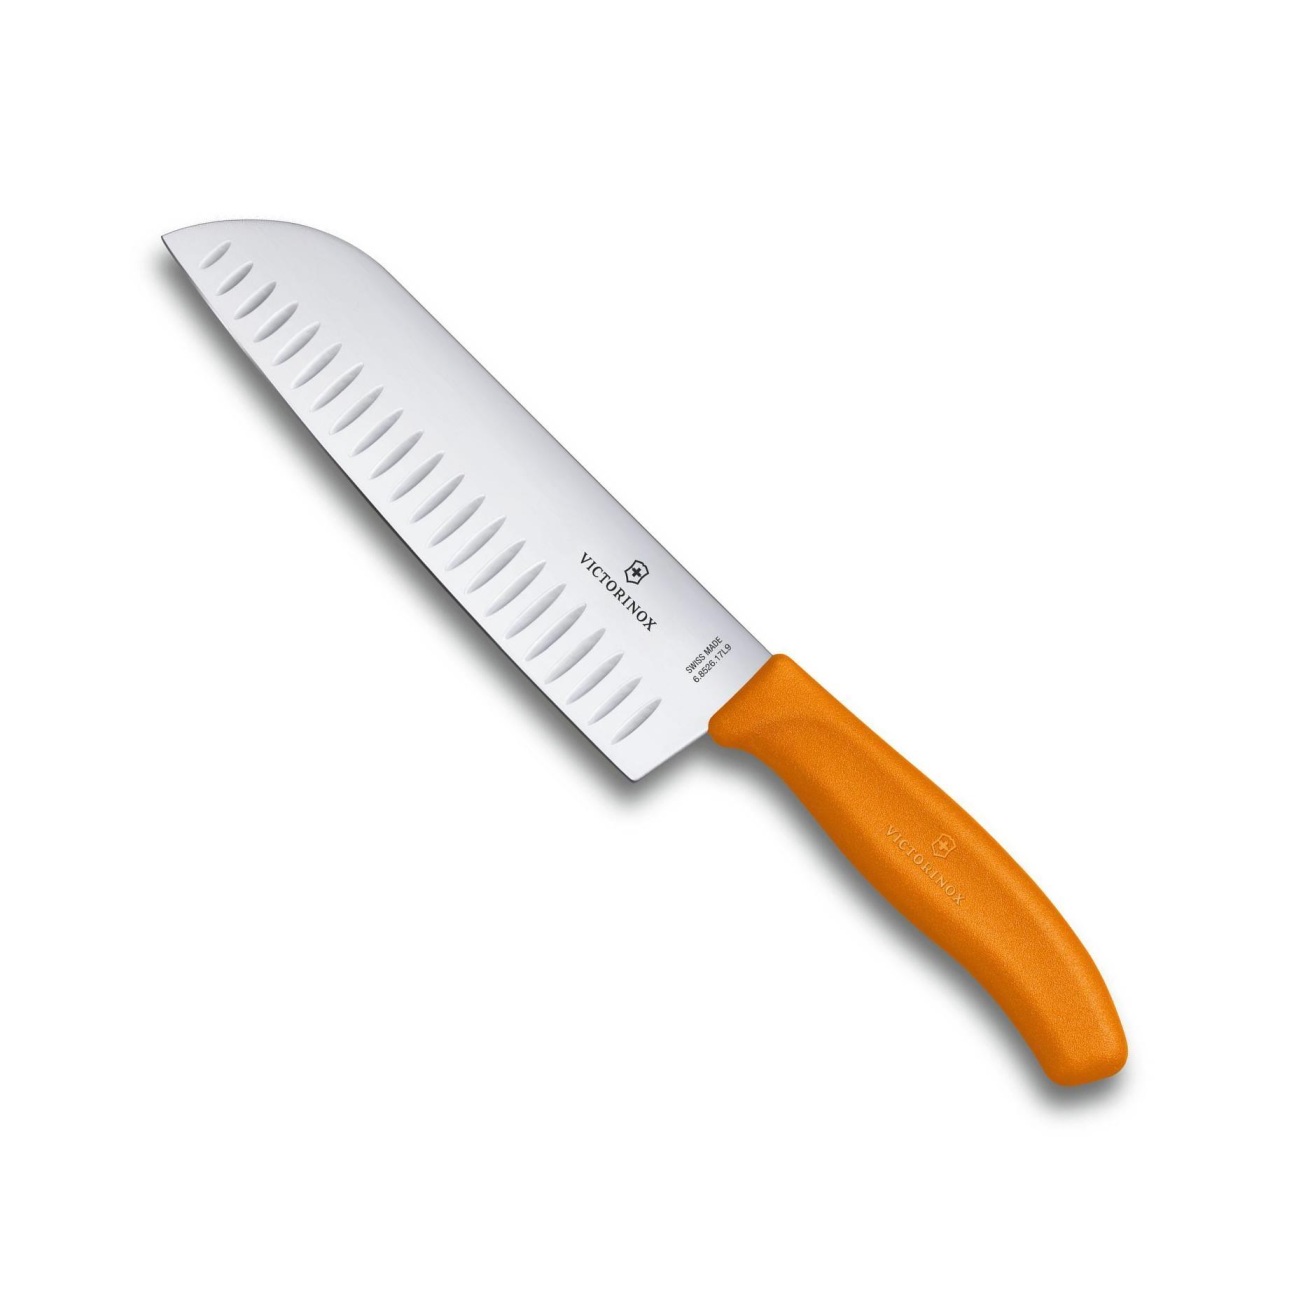 Japonský Nůž Santoku s výbrusy SWISS CLASSIC 17 cm oranžový - Victorinox